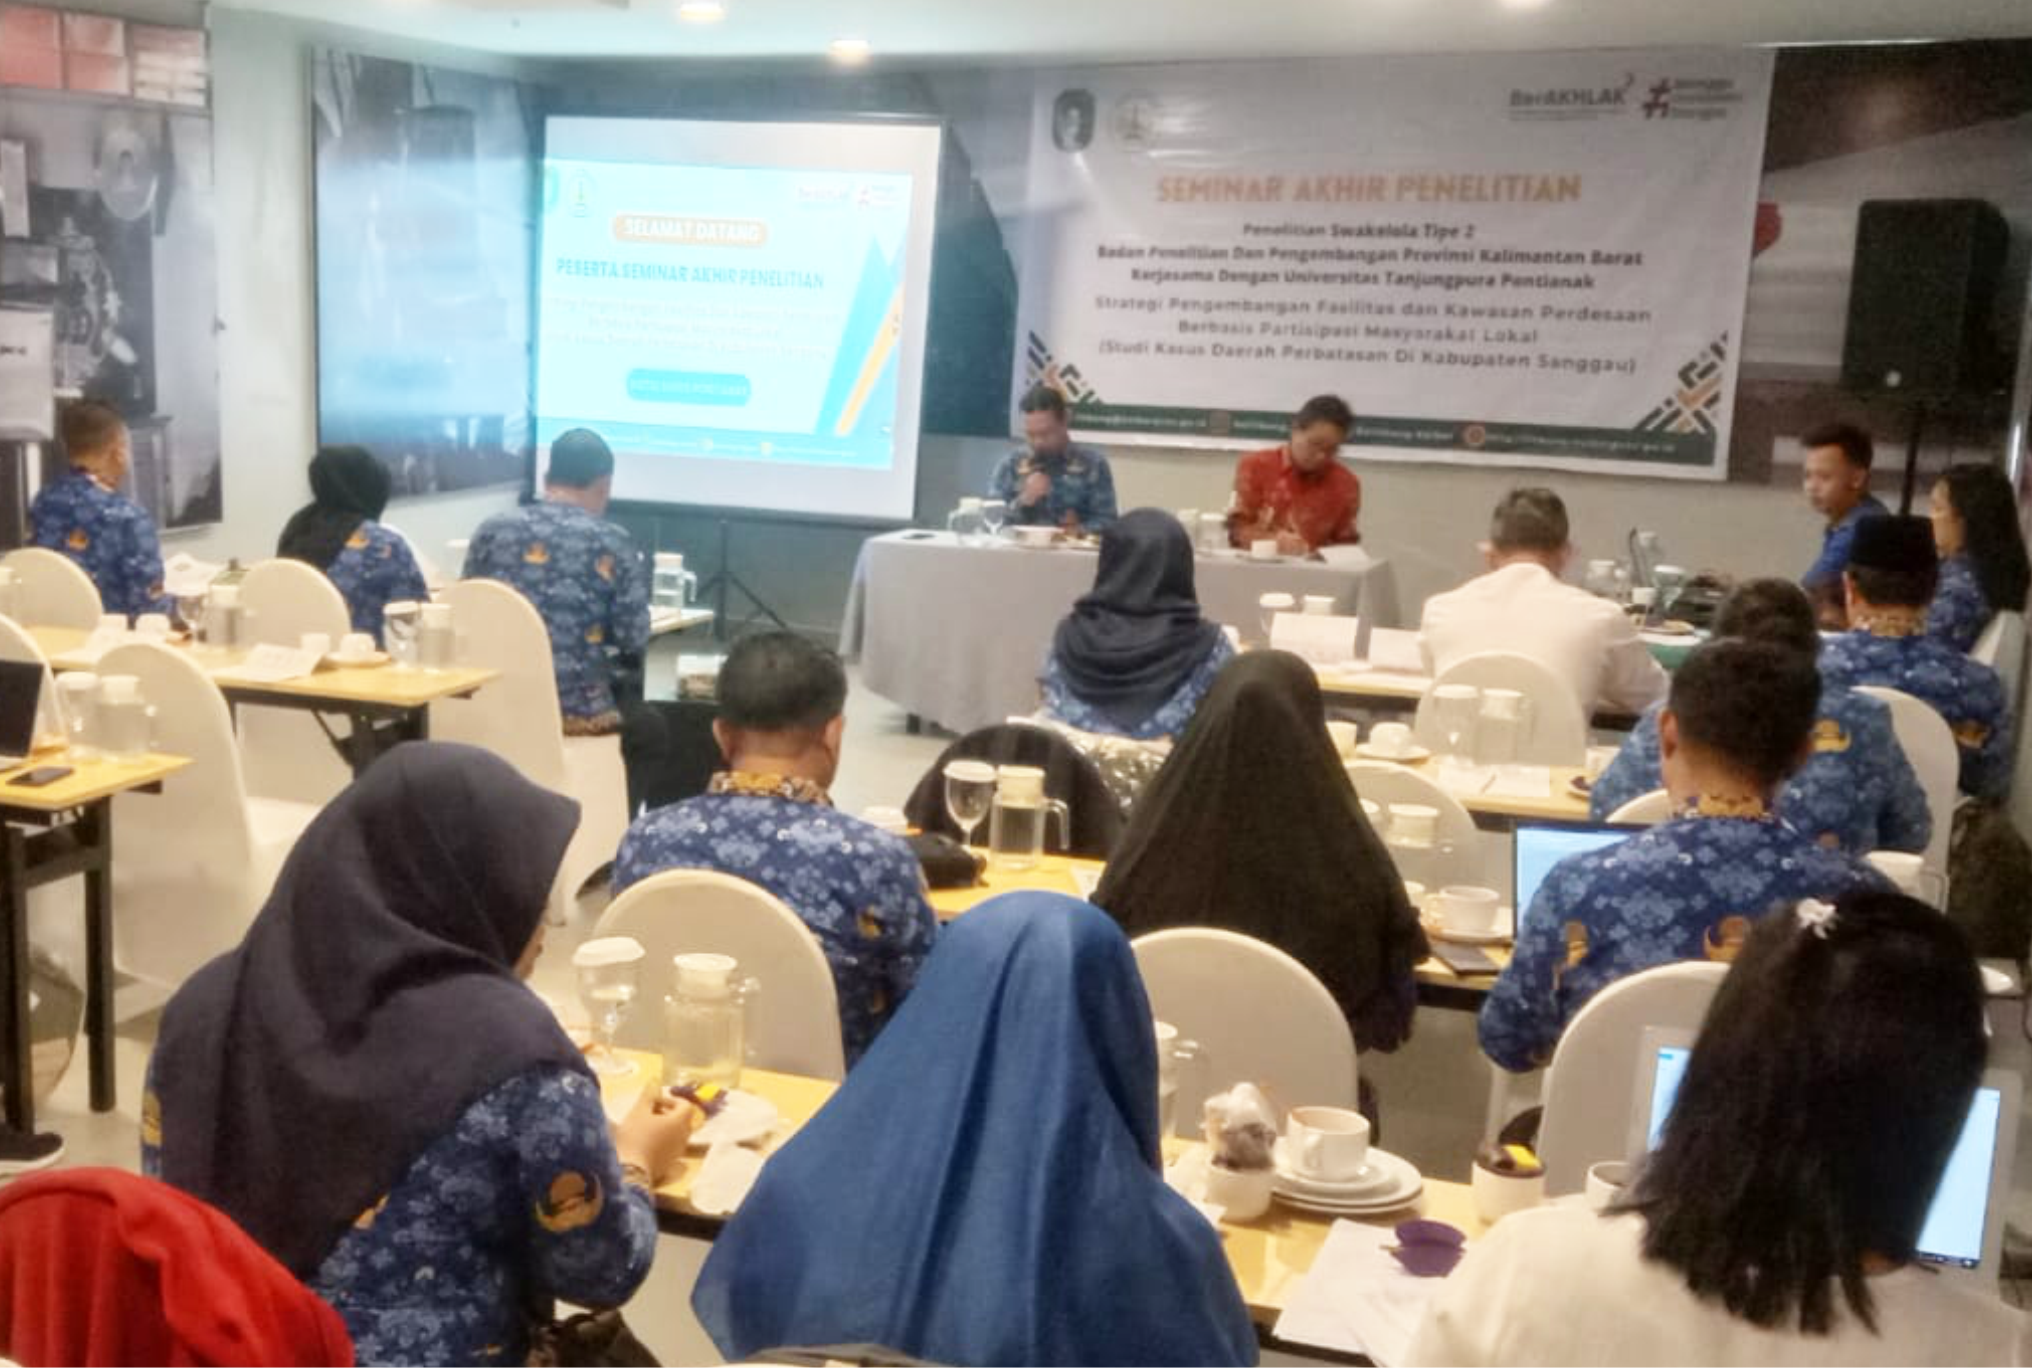 Seminar Akhir Penelitian Strategi Pengembangan Fasilitas dan Kawasan Pedesaan Berbasis Partisipasi Masyarakat Lokal (Studi Kasus Daerah Perbatasan Kabupaten Sanggau)